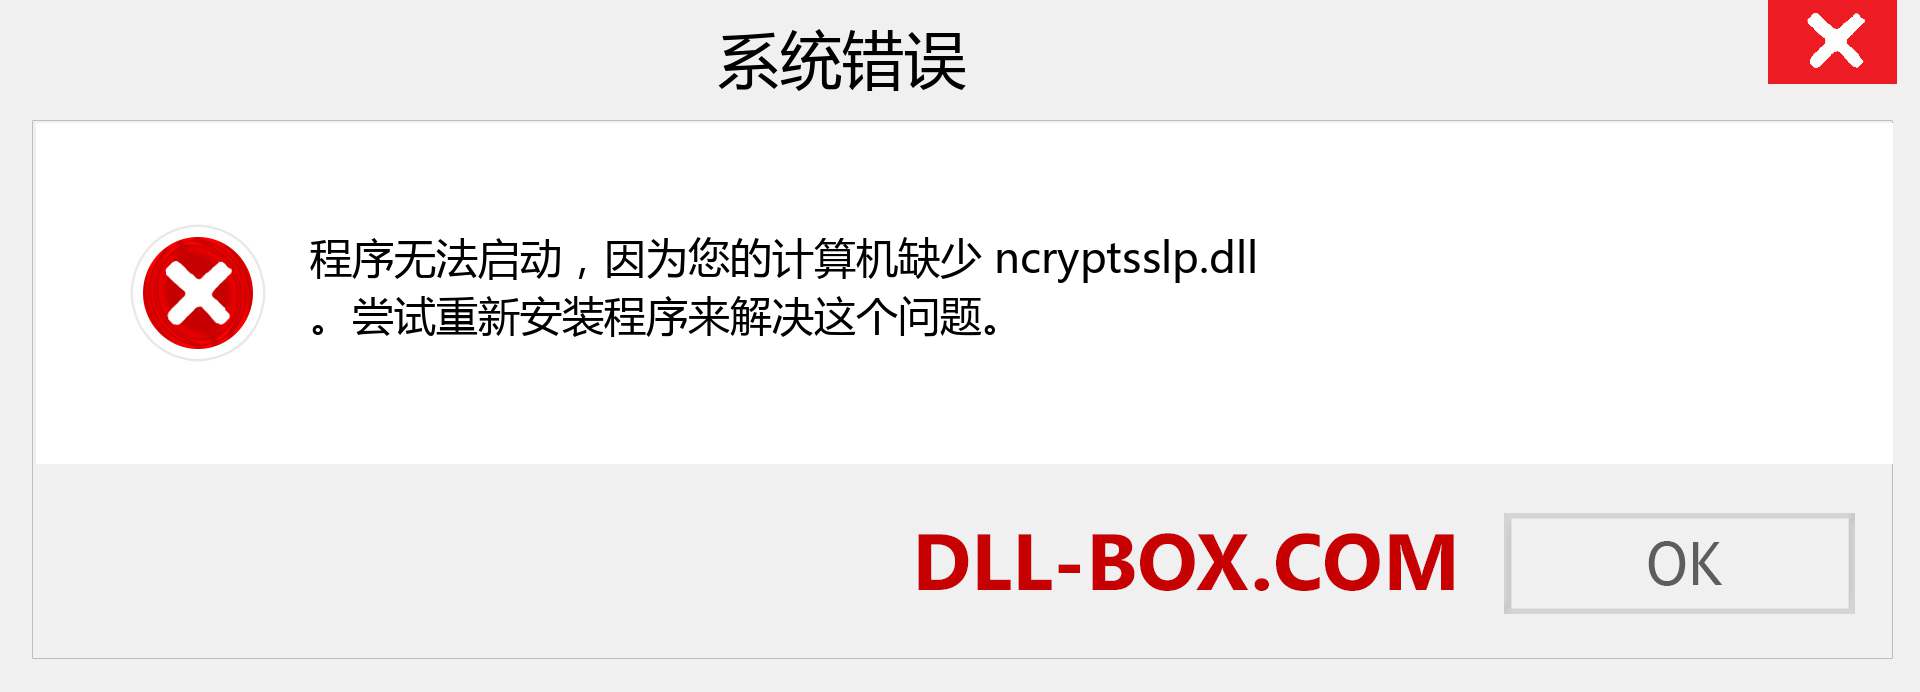 ncryptsslp.dll 文件丢失？。 适用于 Windows 7、8、10 的下载 - 修复 Windows、照片、图像上的 ncryptsslp dll 丢失错误